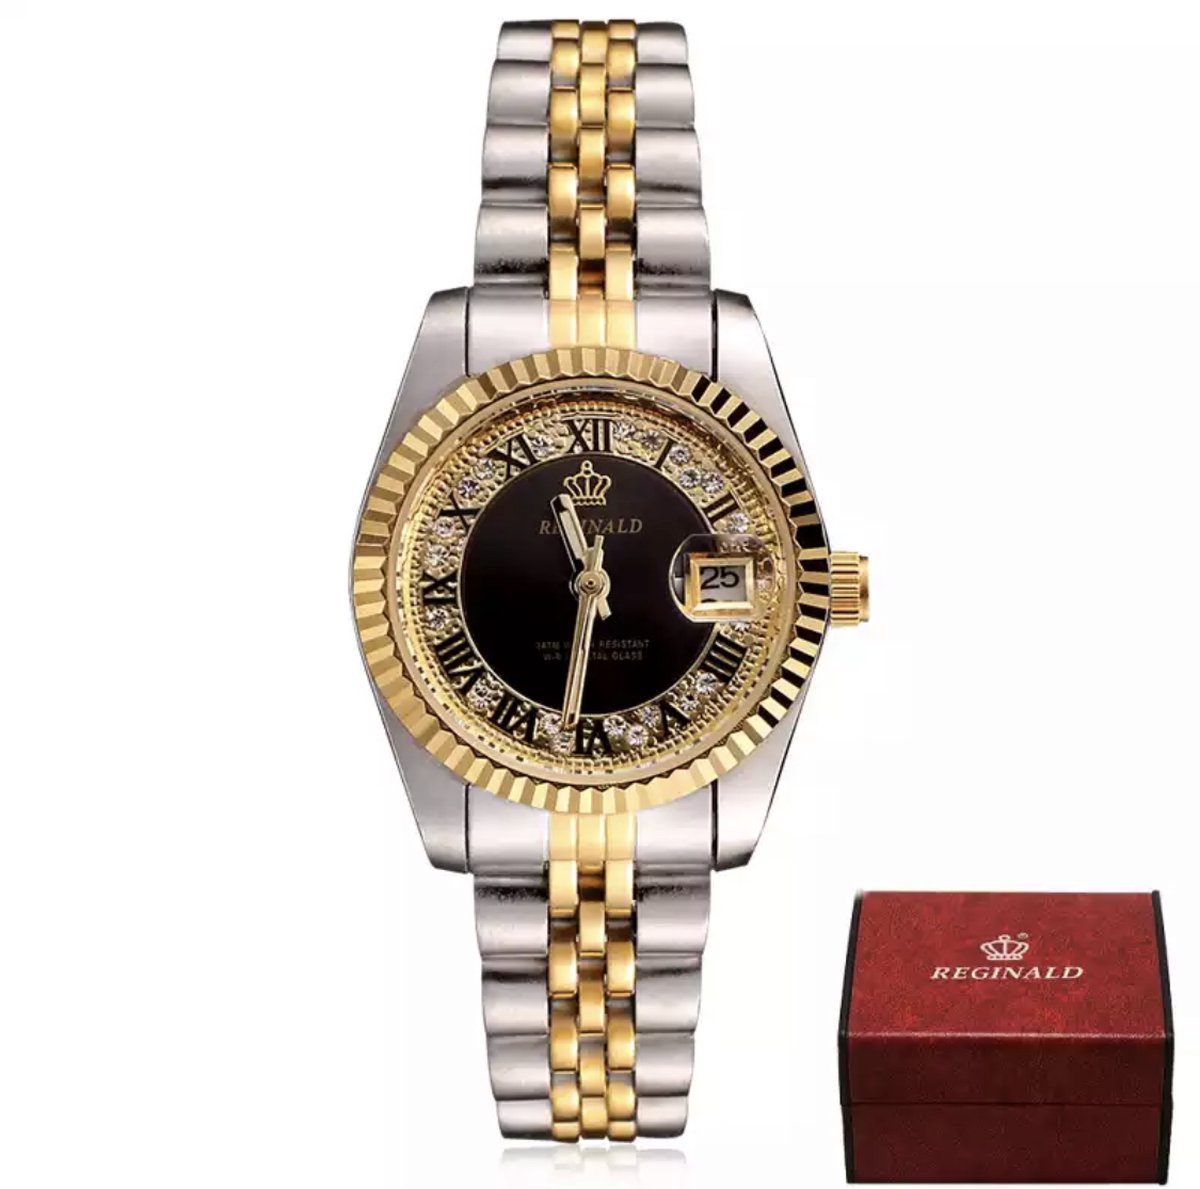 Reginald Horloges - Gold Black - Horloge vrouwen - Luxe Design - Dames horloge - 27 mm - Roestvrij Staal - Waterbestendig - Schokbestendig - Geschenkset